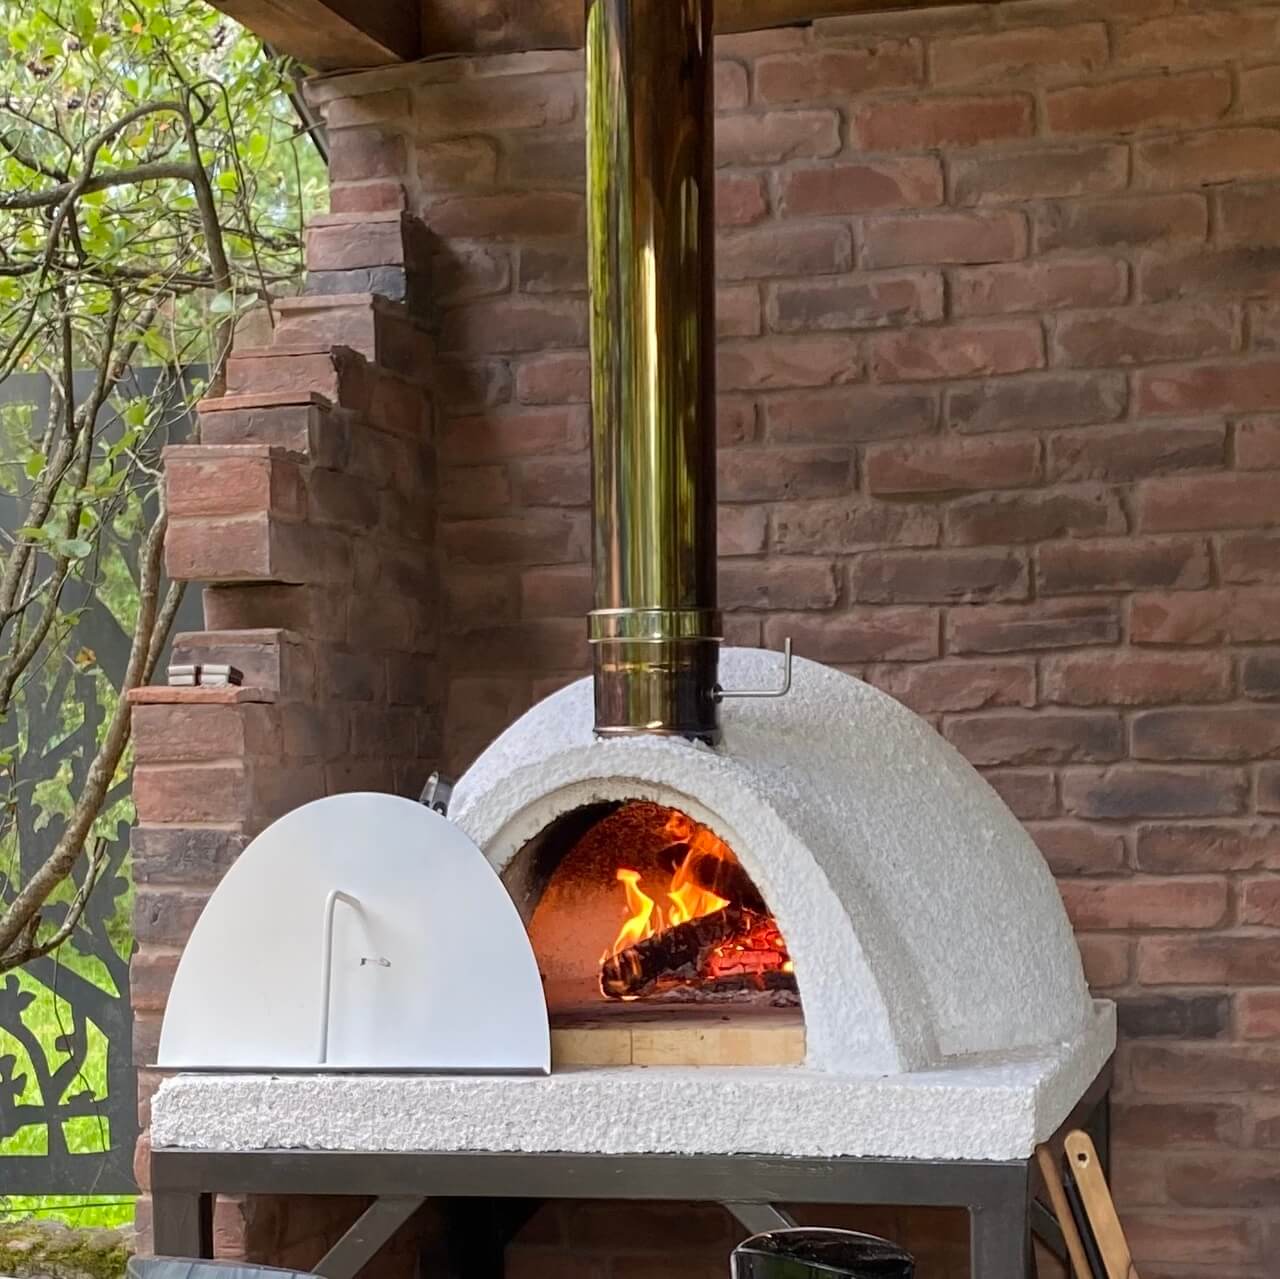 Печь для пиццы на дровах